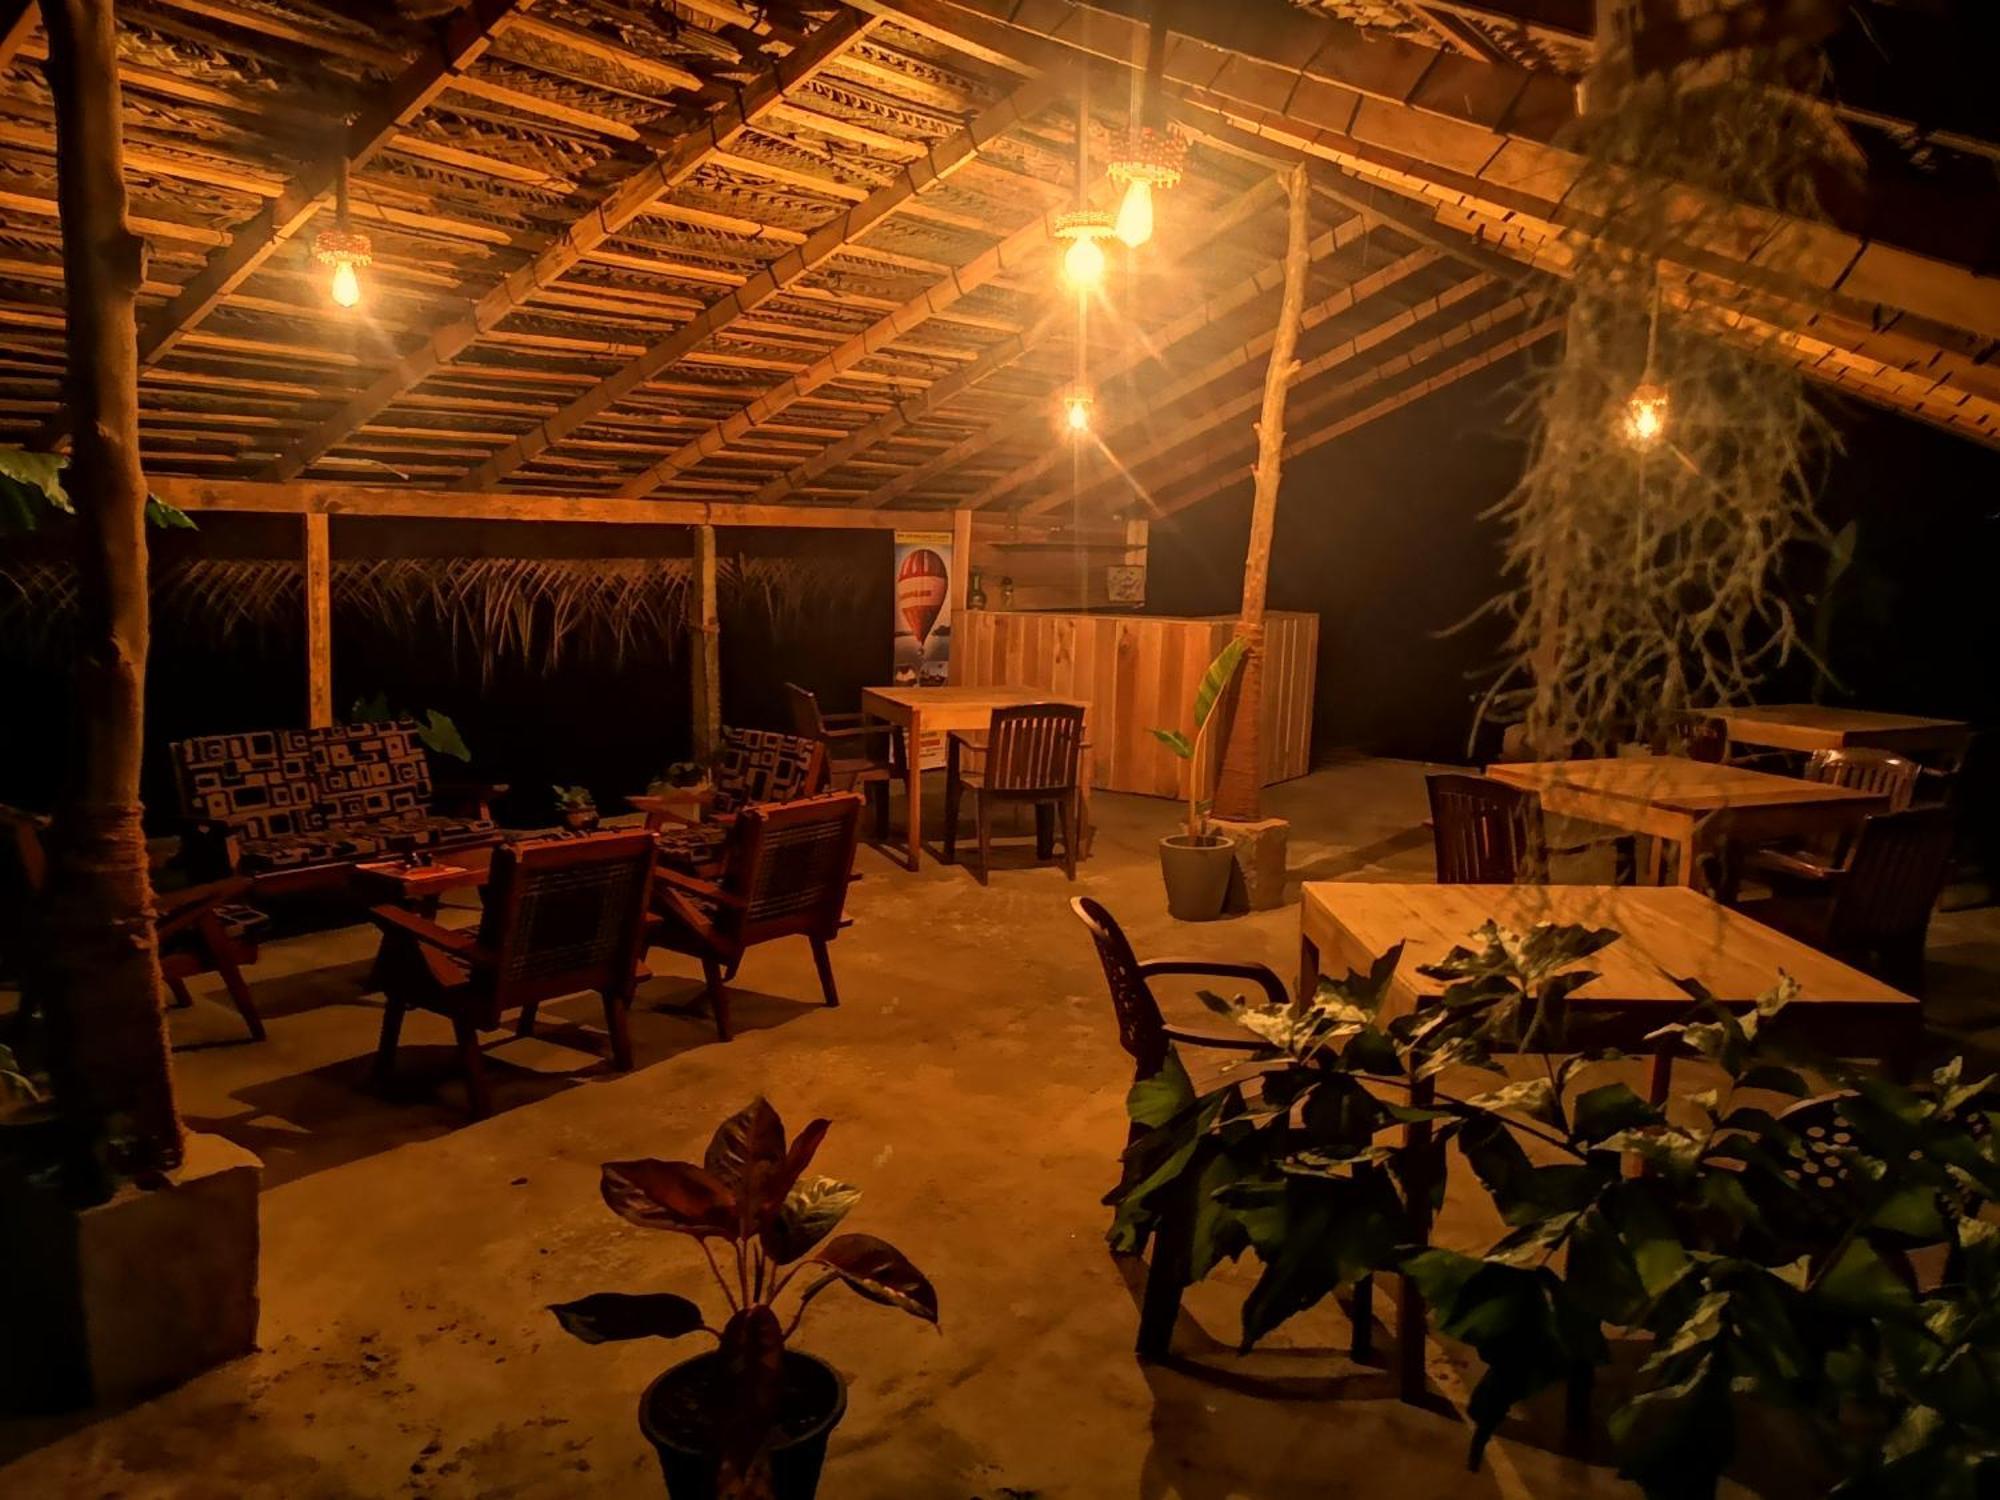 Hotel Bird Paradise Sigiriya Exteriör bild